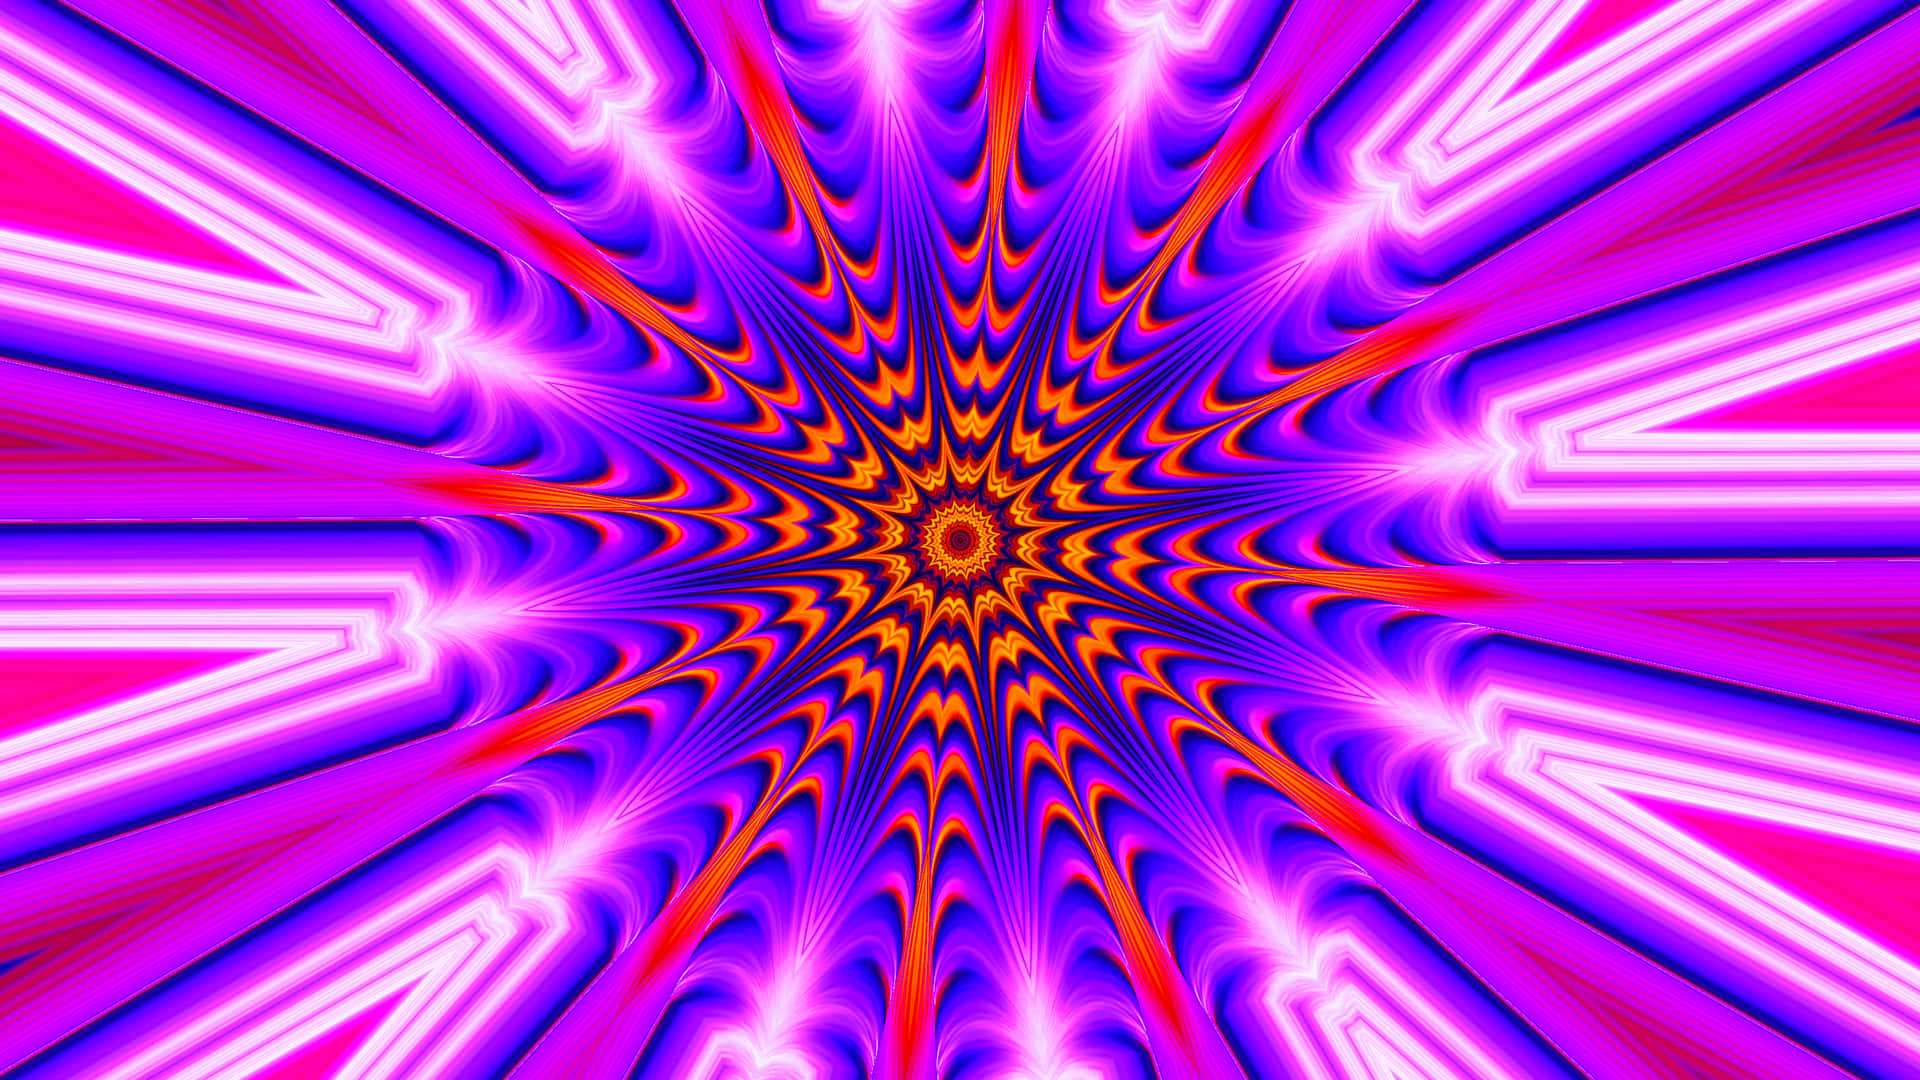 Køligeoptiske Illusioner Psykedelisk Spiral. Wallpaper